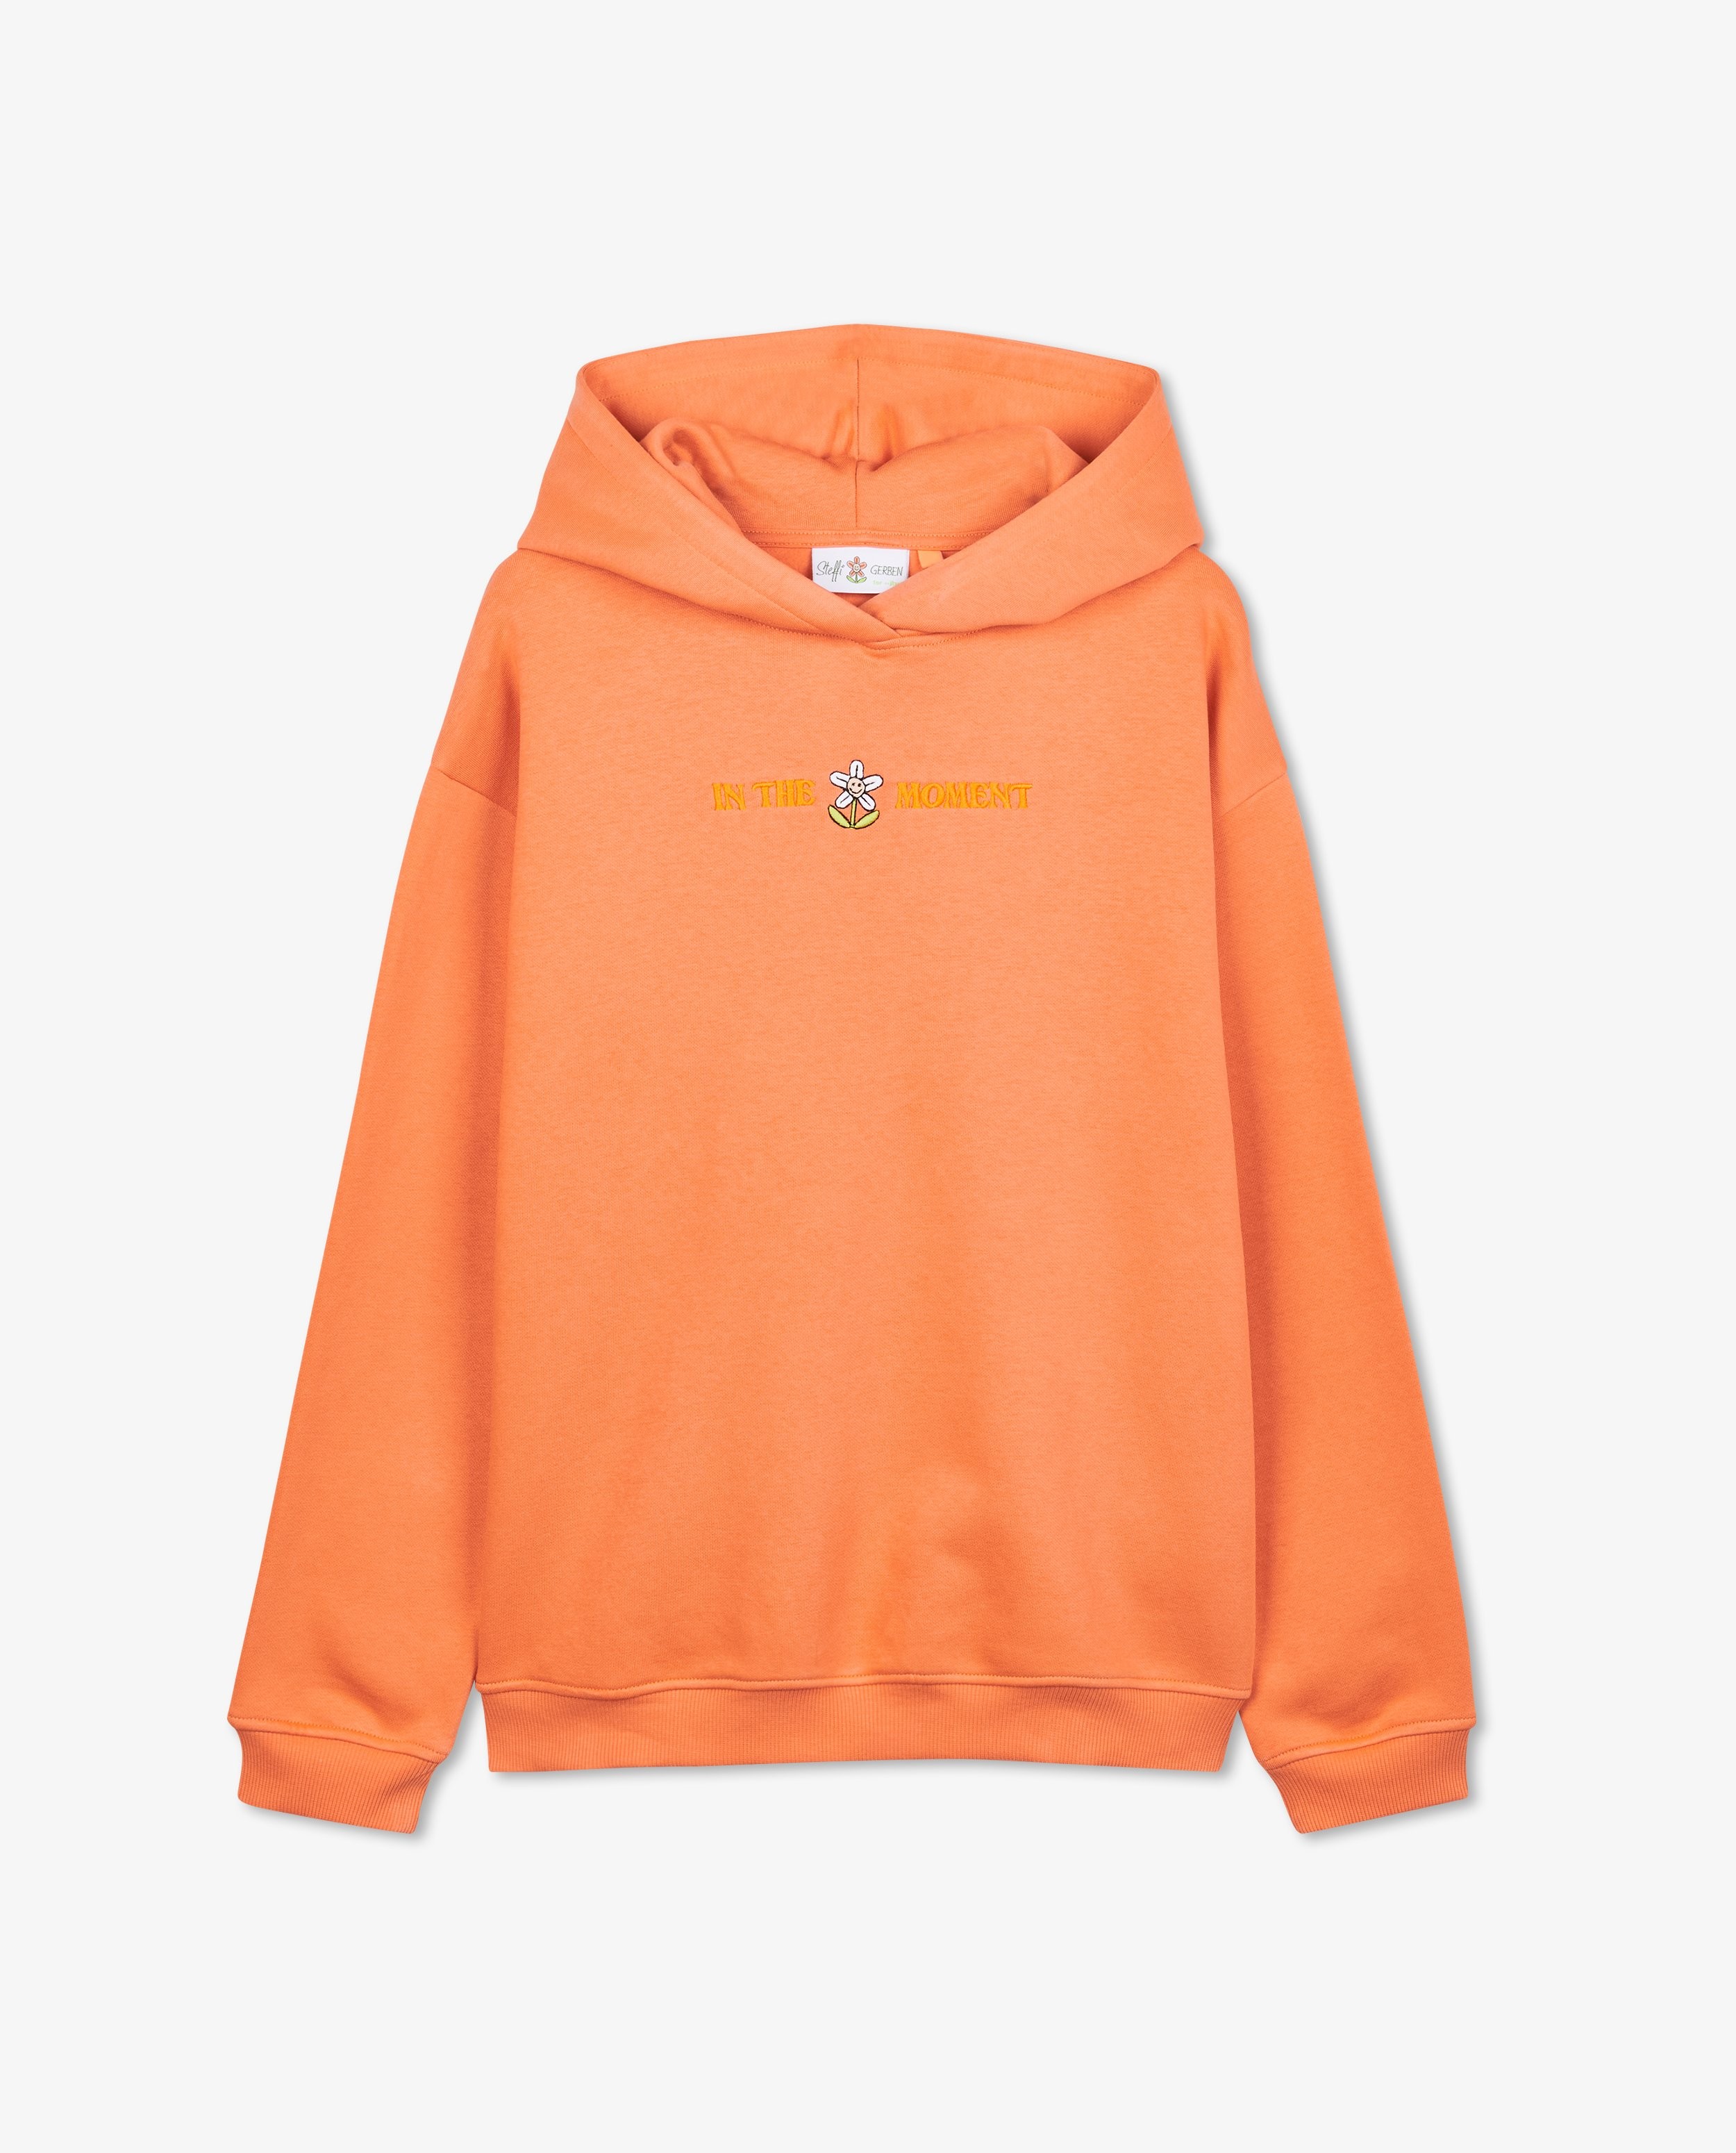 Sweaters - Oranje sweater met opschrift